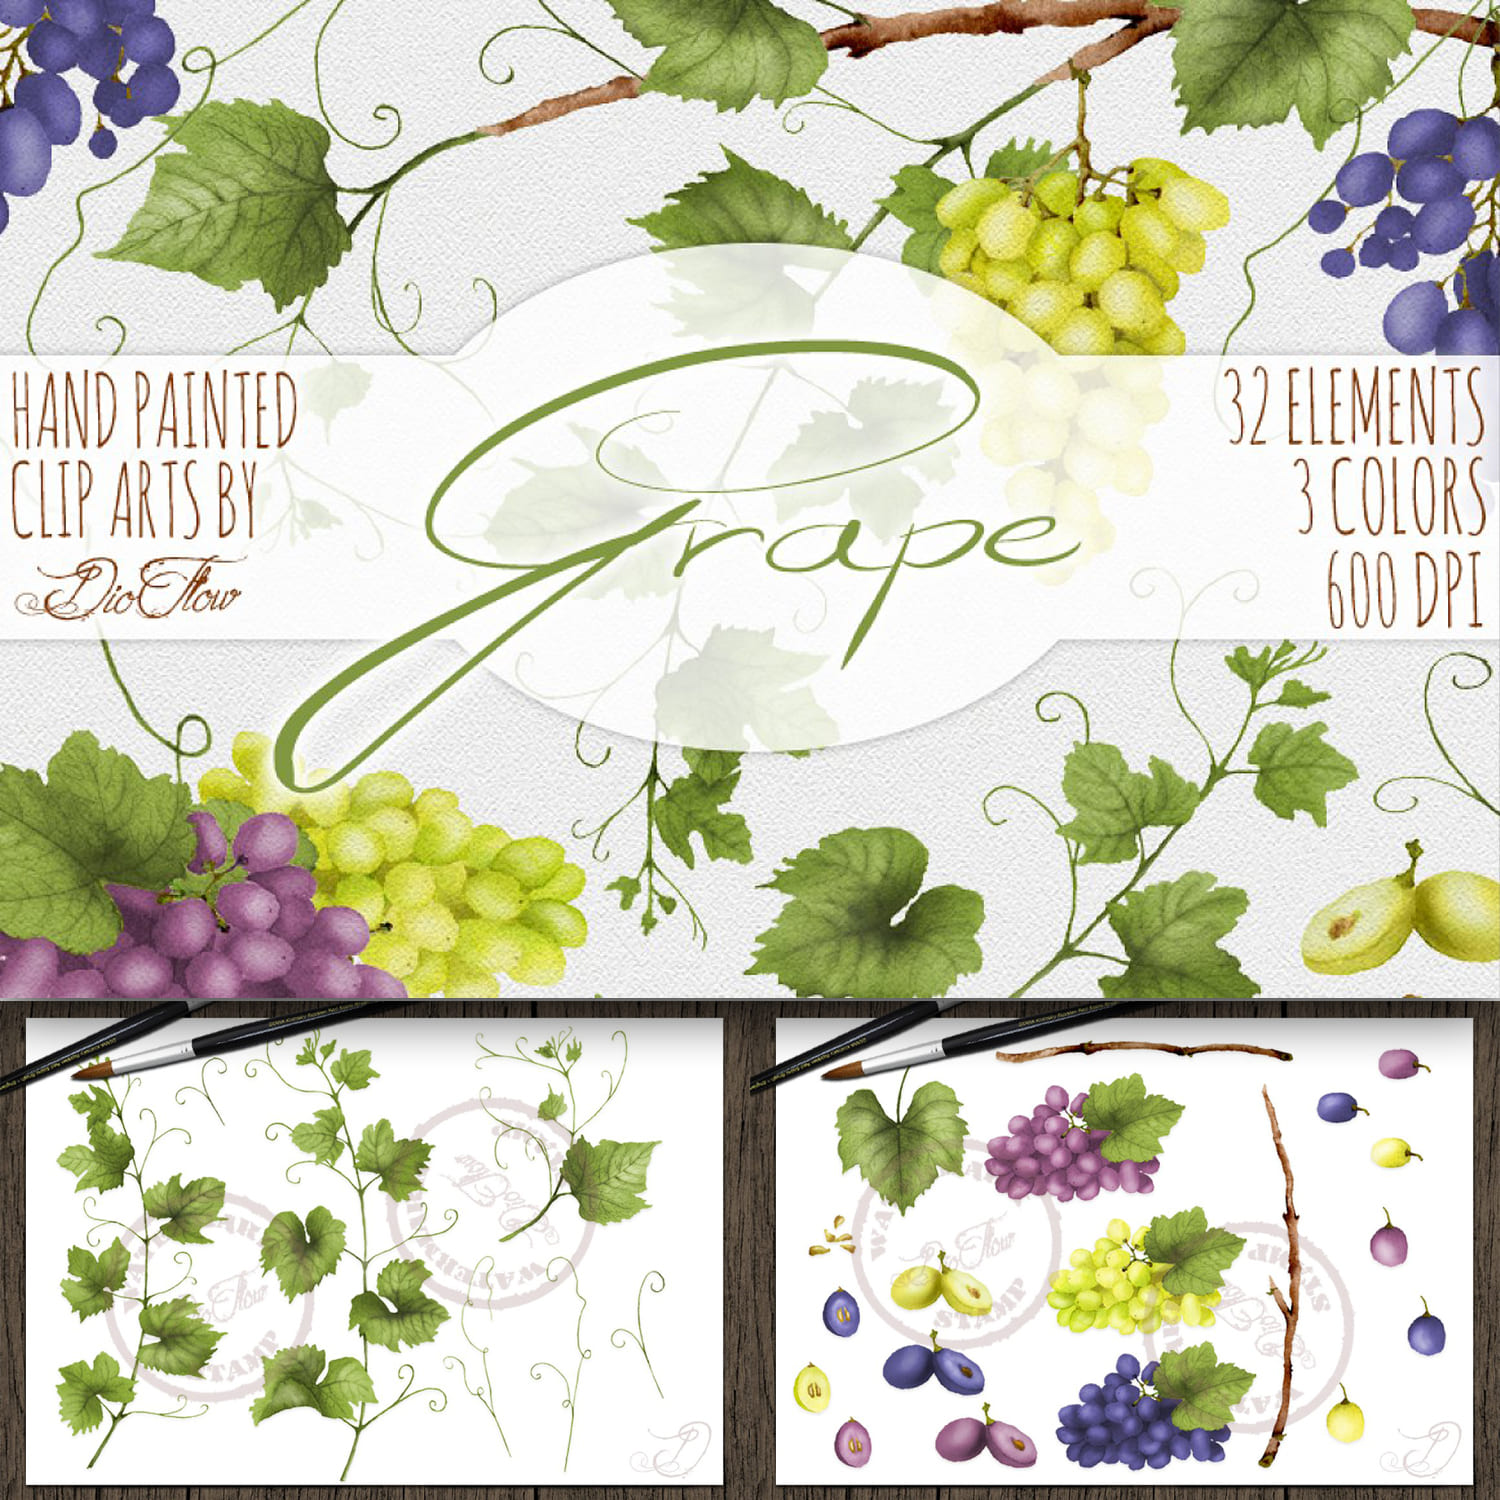 Grape Watercolor Clip Art cover.